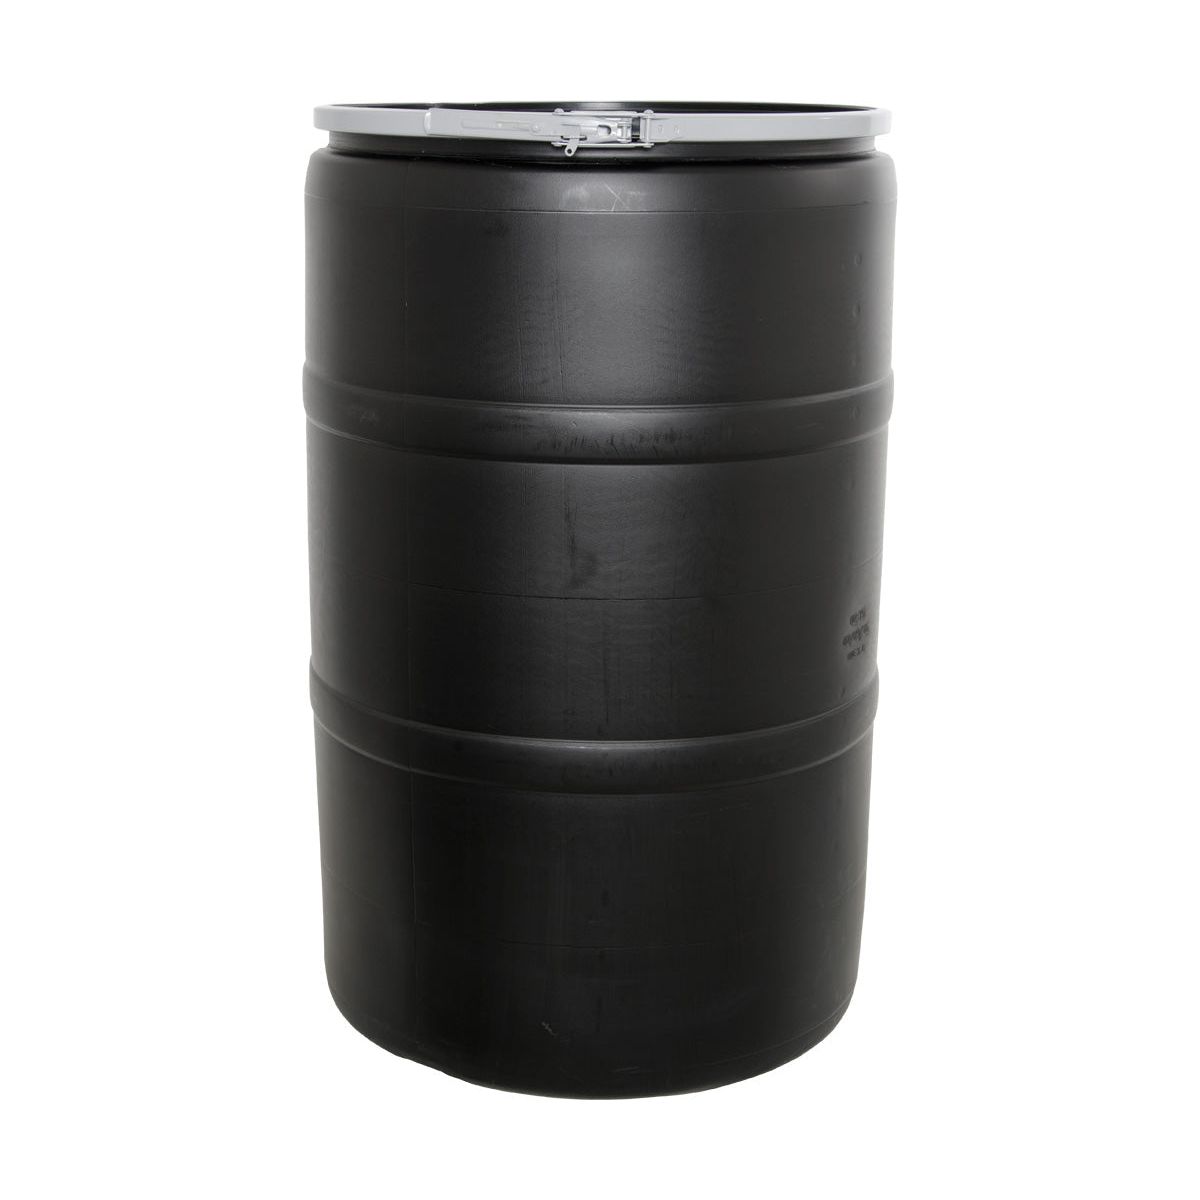 ActiveAqua 55 gallon Drum with Locking Lid Main